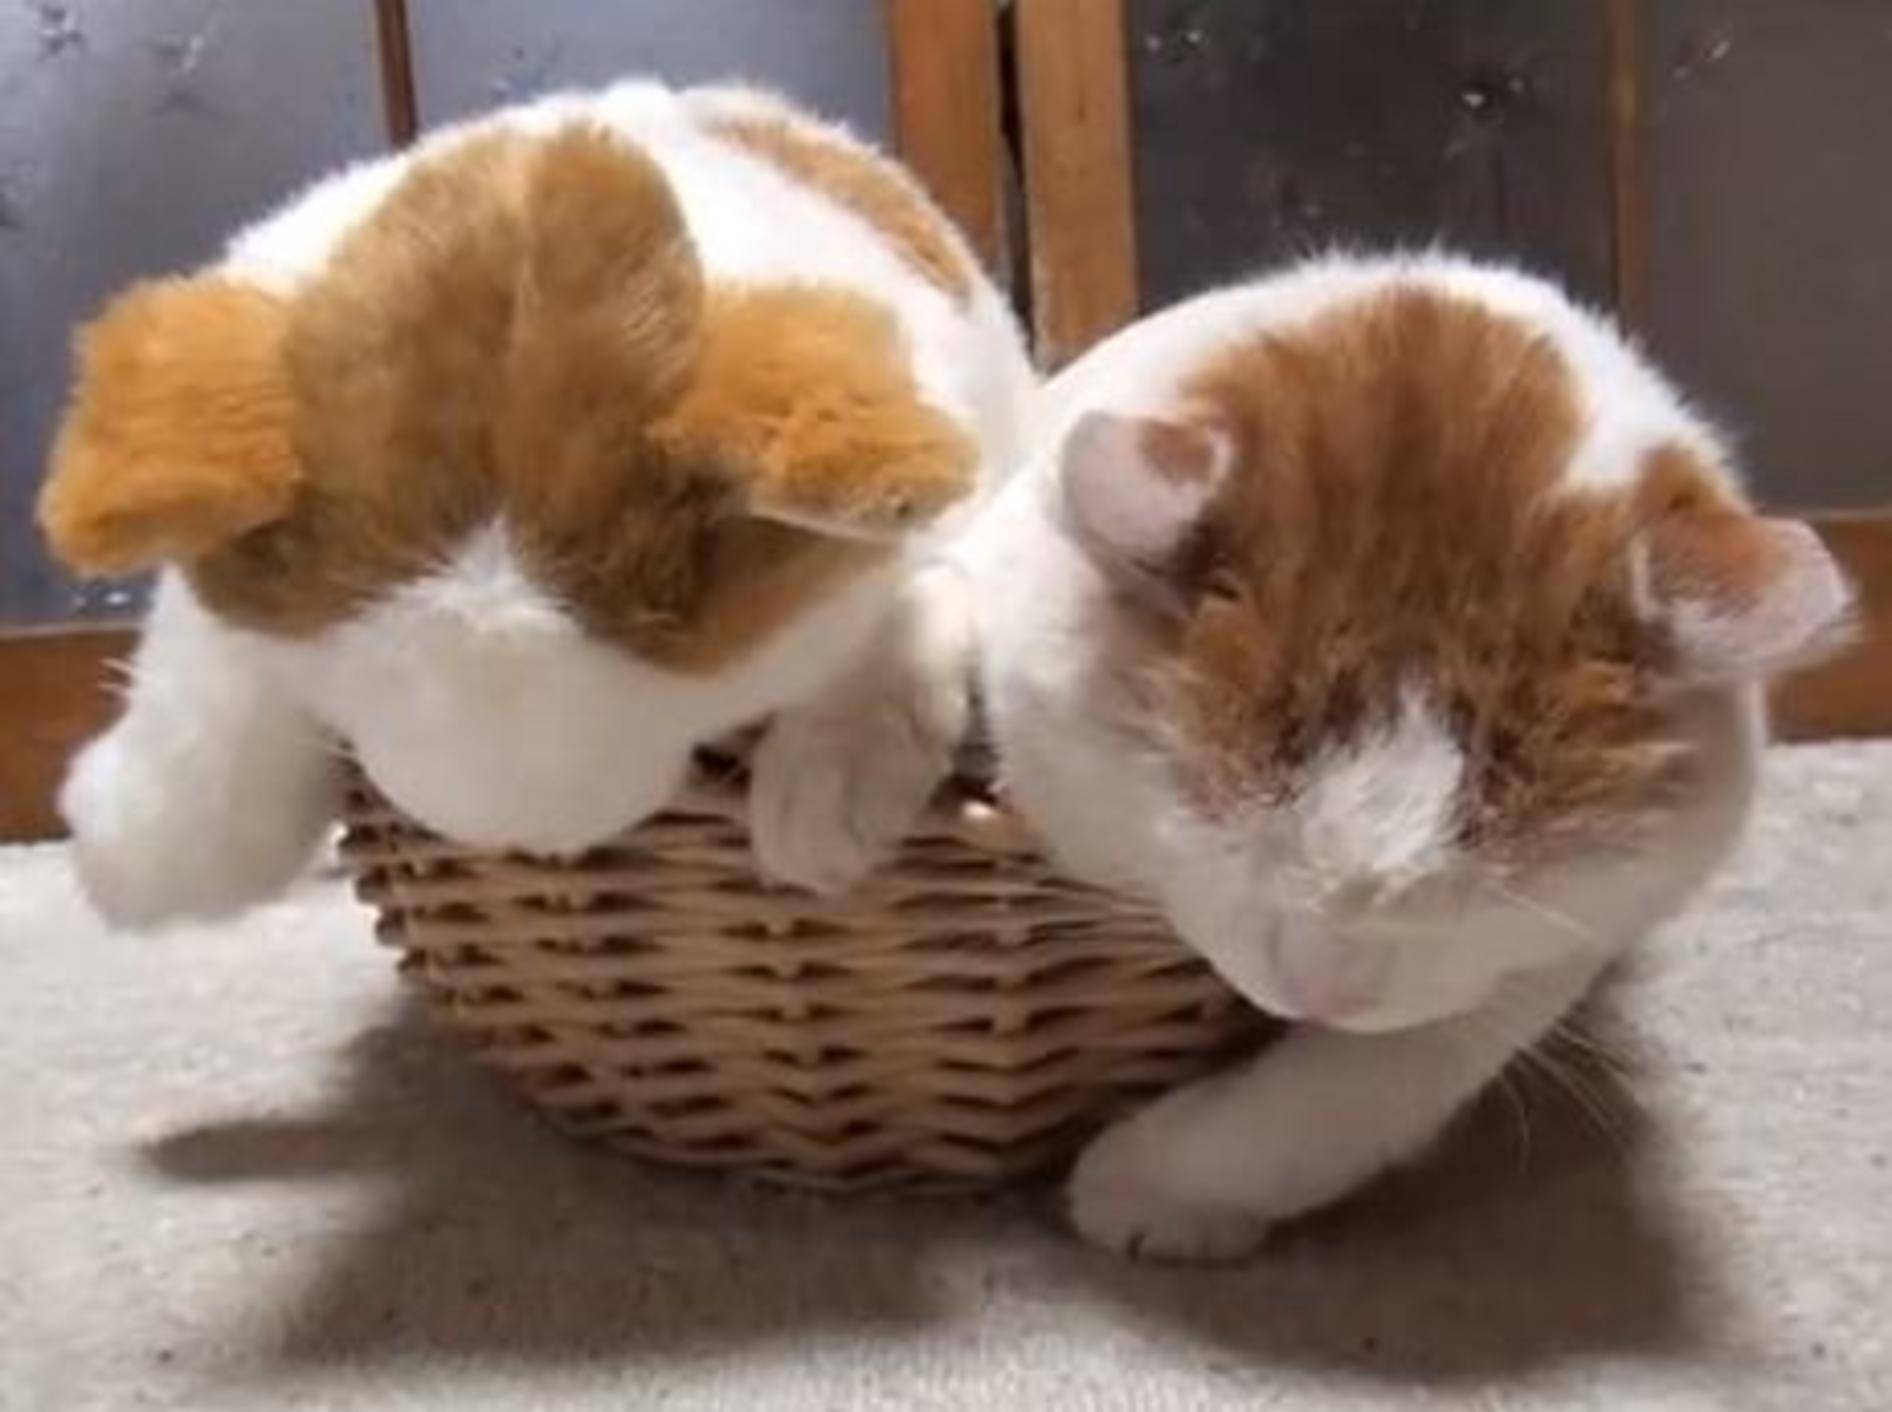 Katze hat lustiges Stofftier als Doppelgänger — Bild:Youtube / shironekoshiro